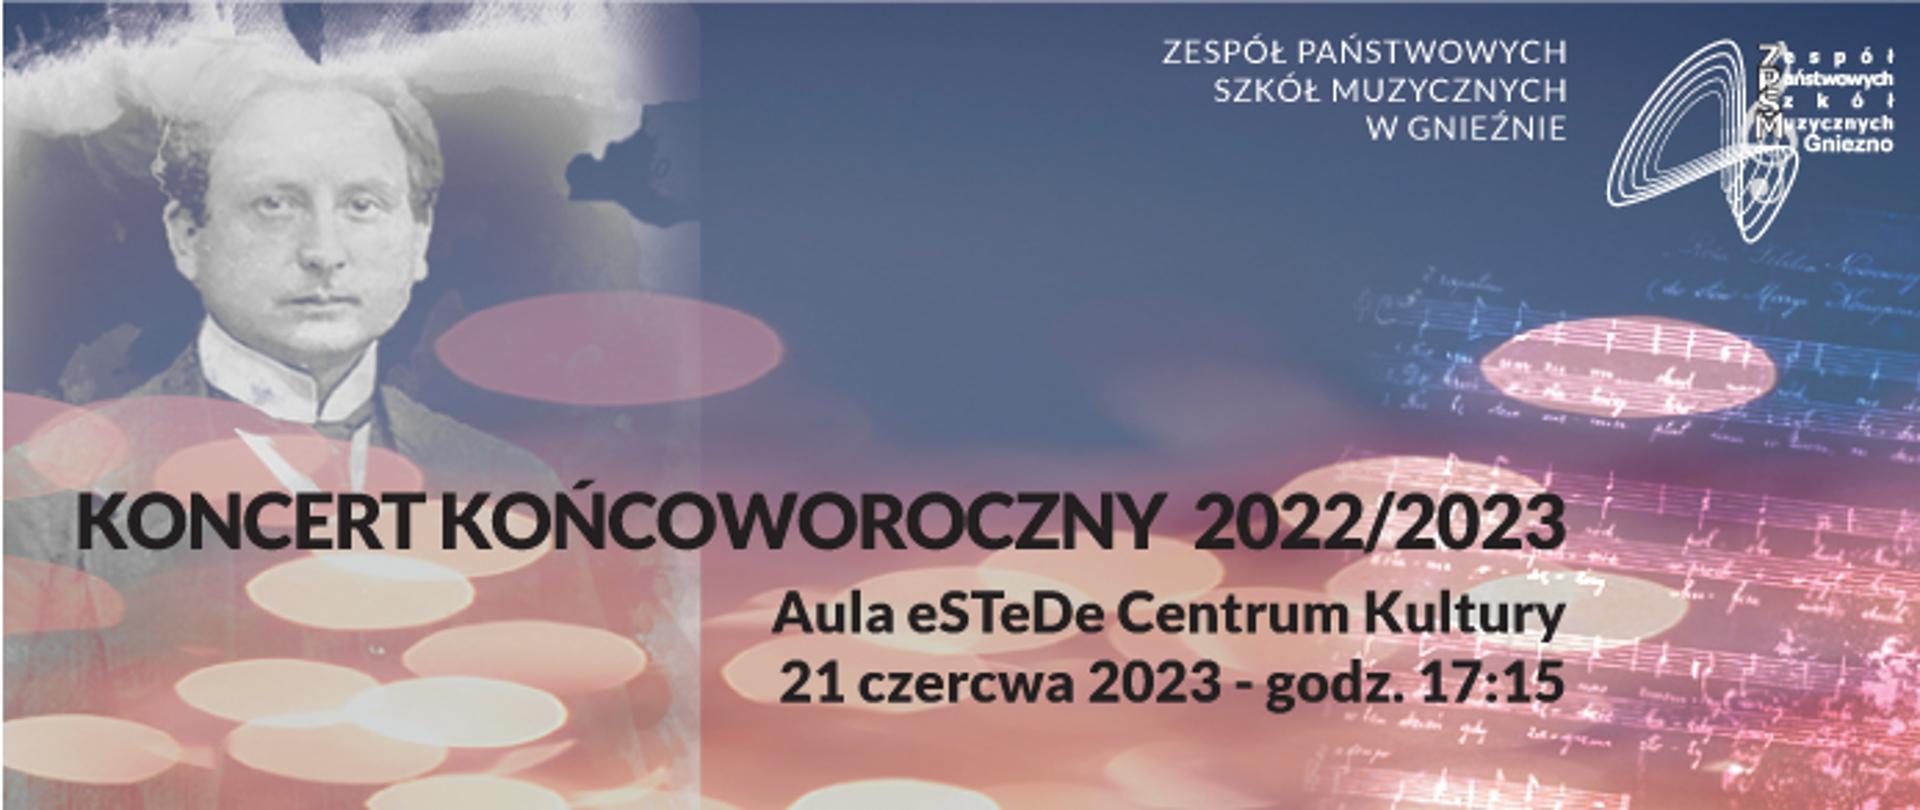 na różowo-fioletowym tle z lewej strony wizerunek Feliksa Nowowiejskiego, w prawym górnym roku logo ZPSM, na dole czarną czcionką informacje o koncercie końcoworocznym w eSTeDe 21 czerwca 2023r.